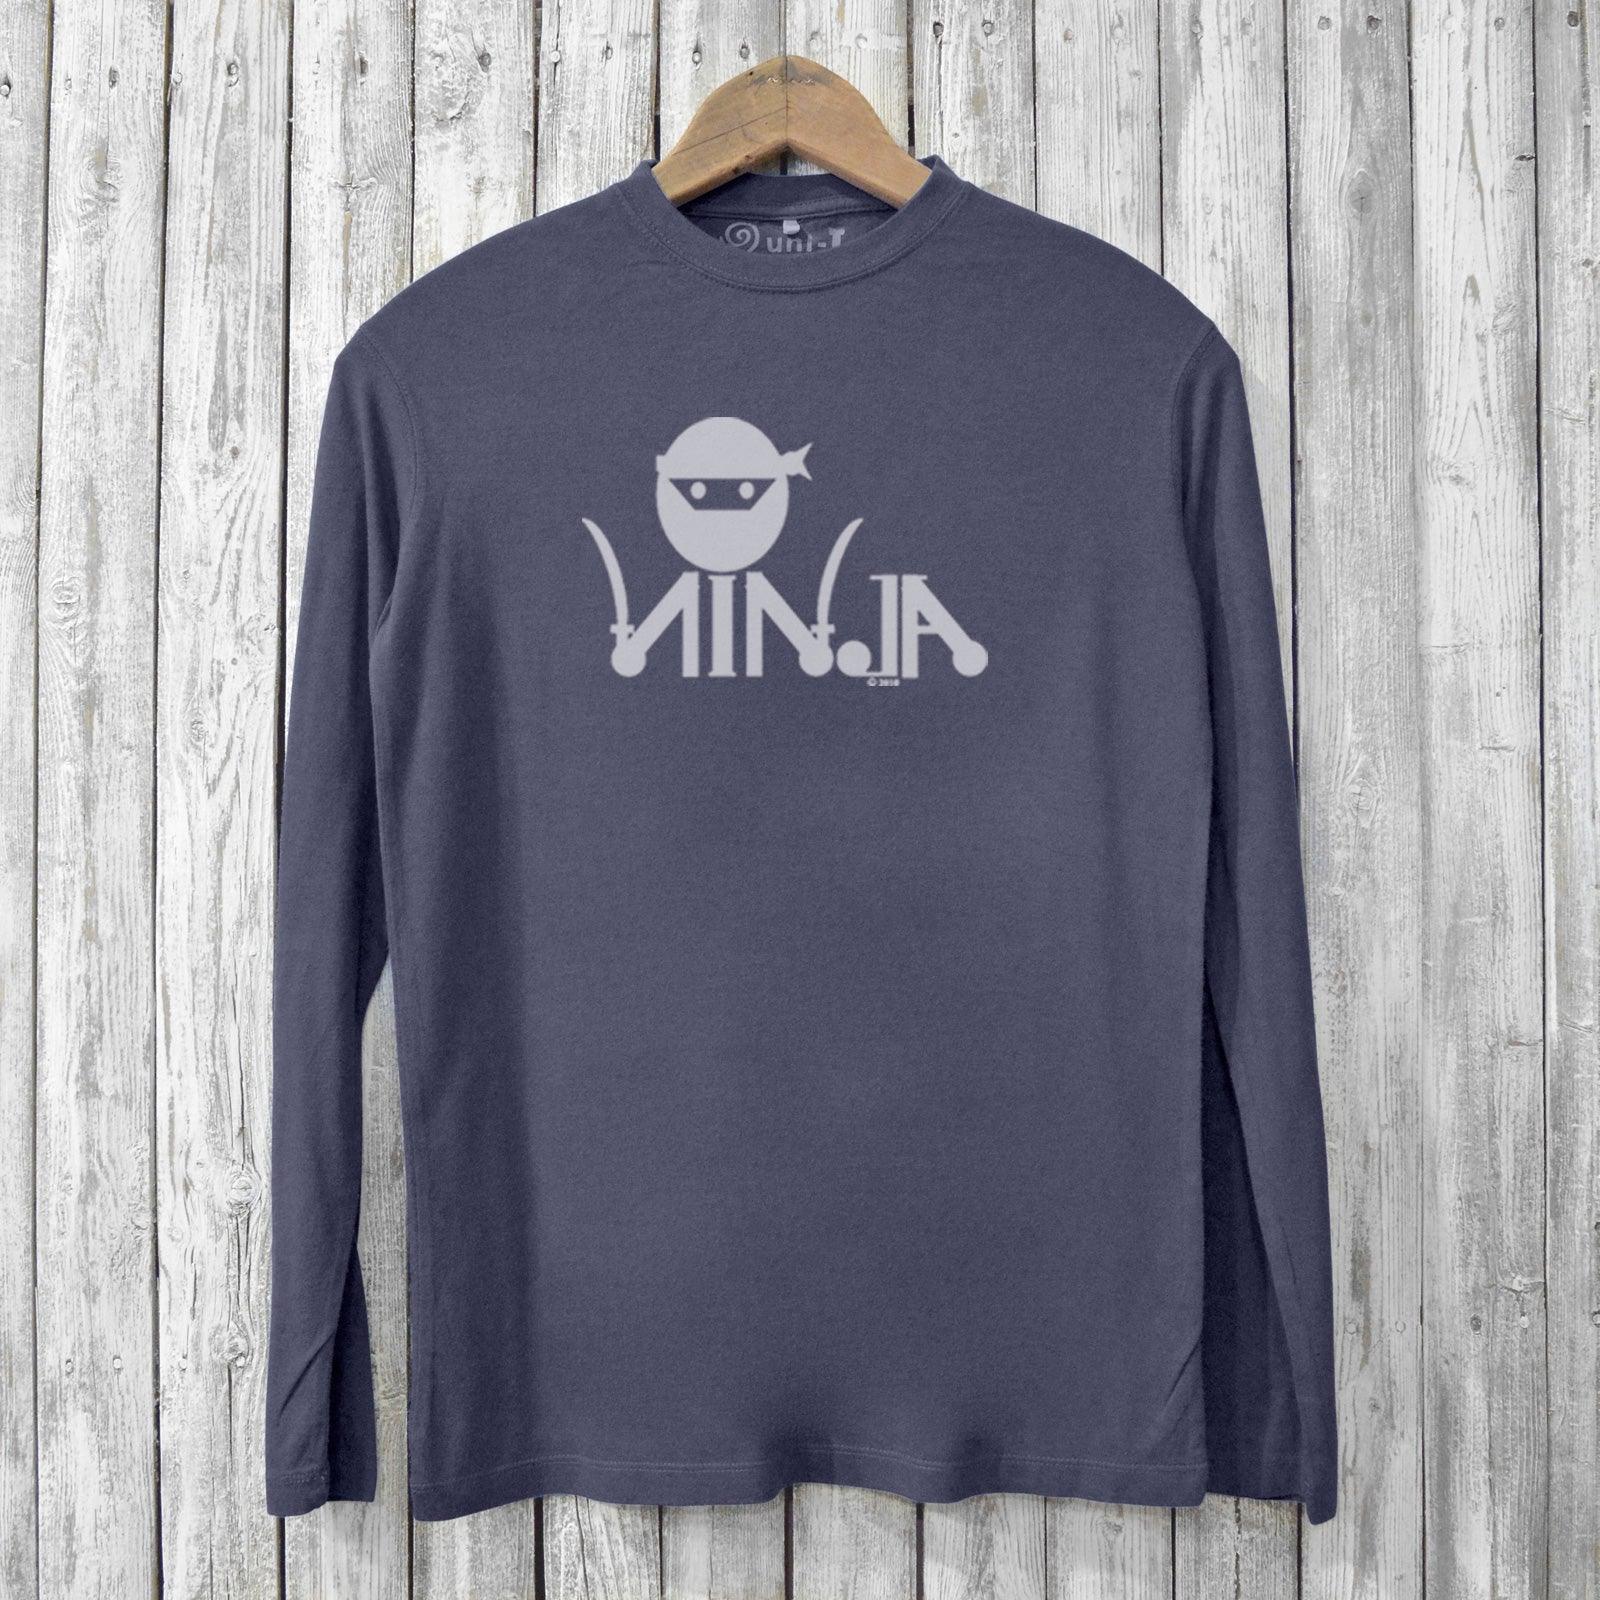 Ninja Long Sleeve T-shirts for Men Uni-T